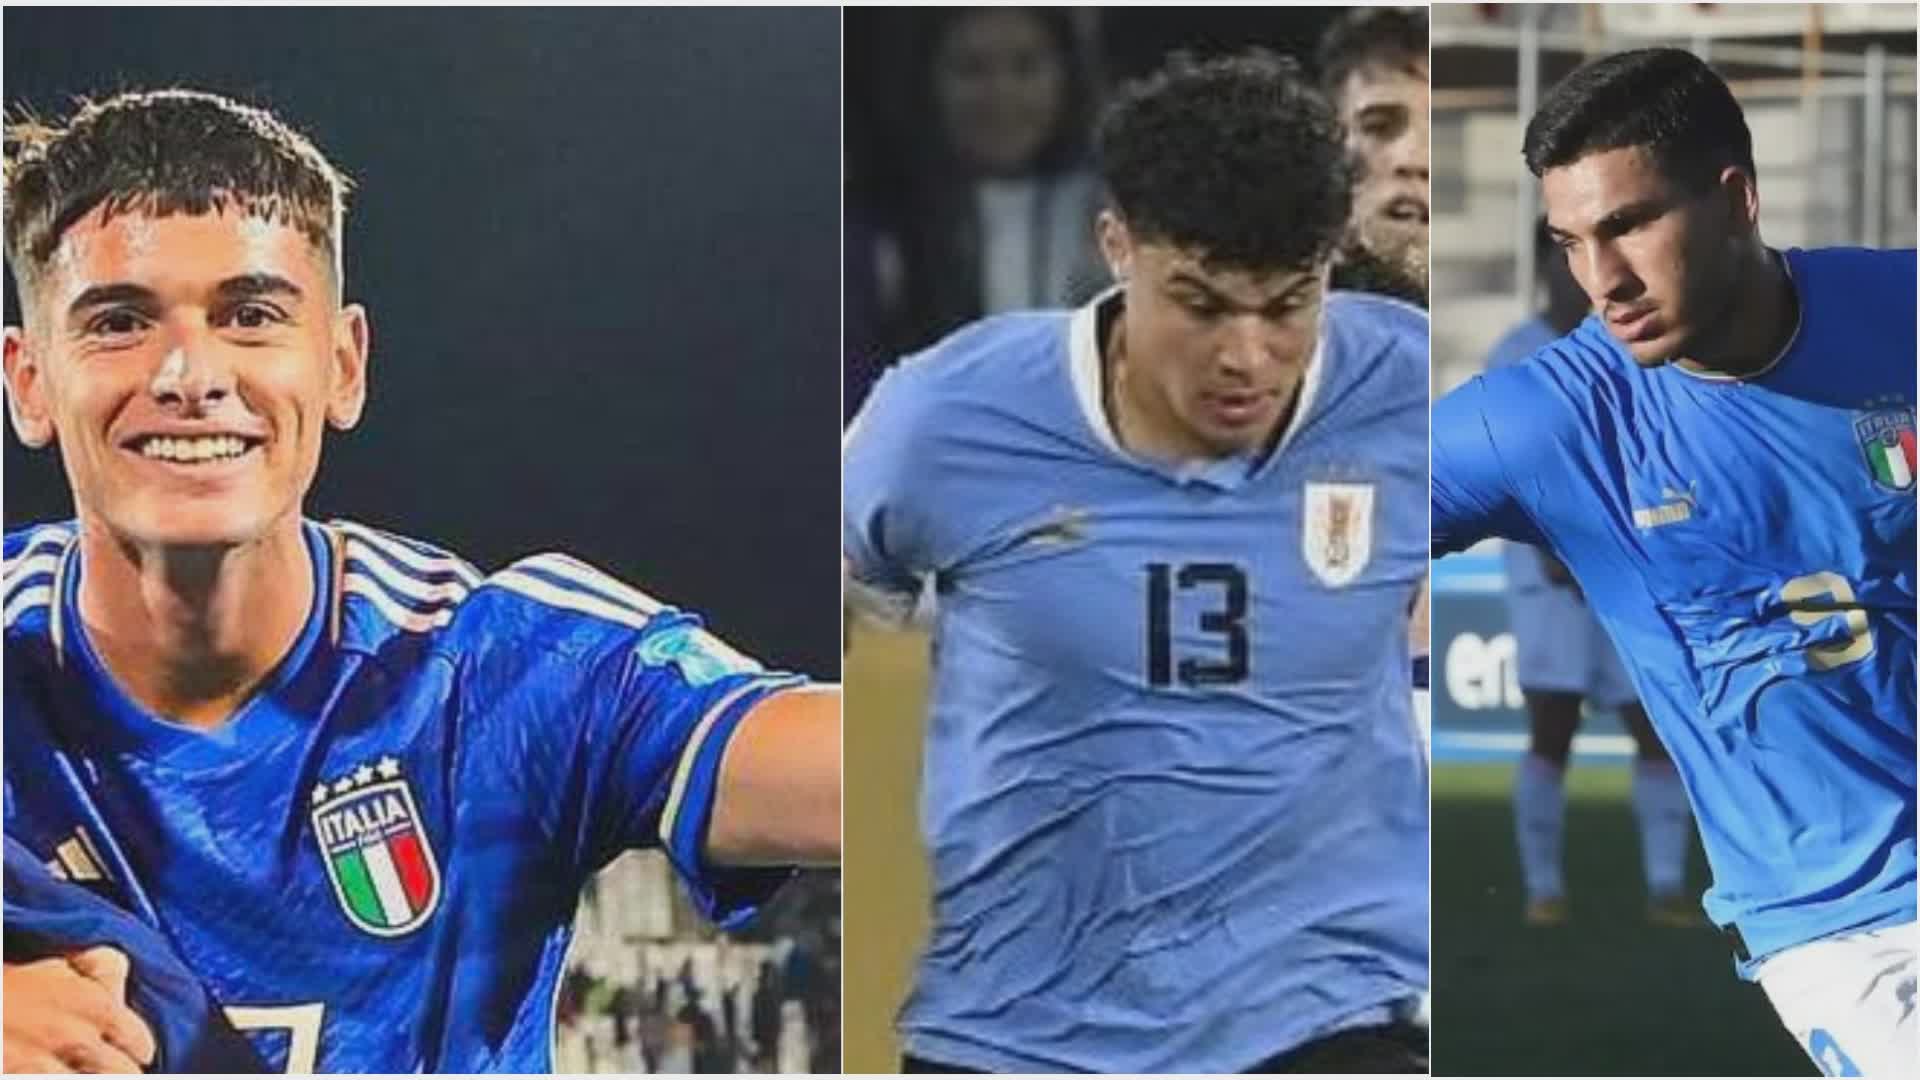 Montevago, Lipani e Matturro: al Mondiale U20 c'è tanta Genova nella finale Italia-Uruguay